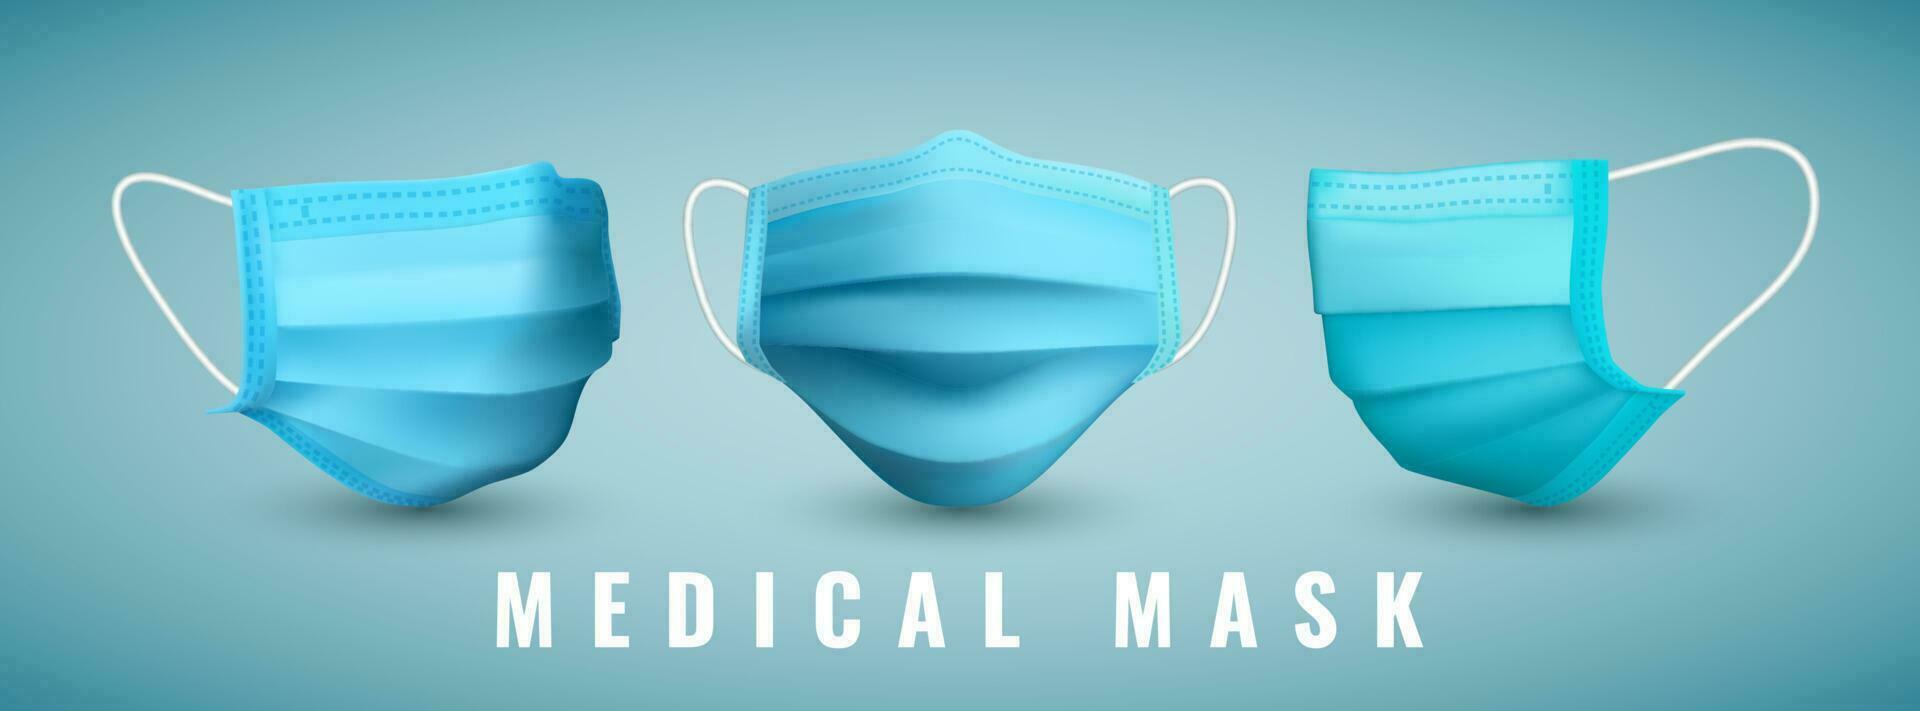 realista médico face mascarar. detalhes 3d médico mascarar. vetor ilustração